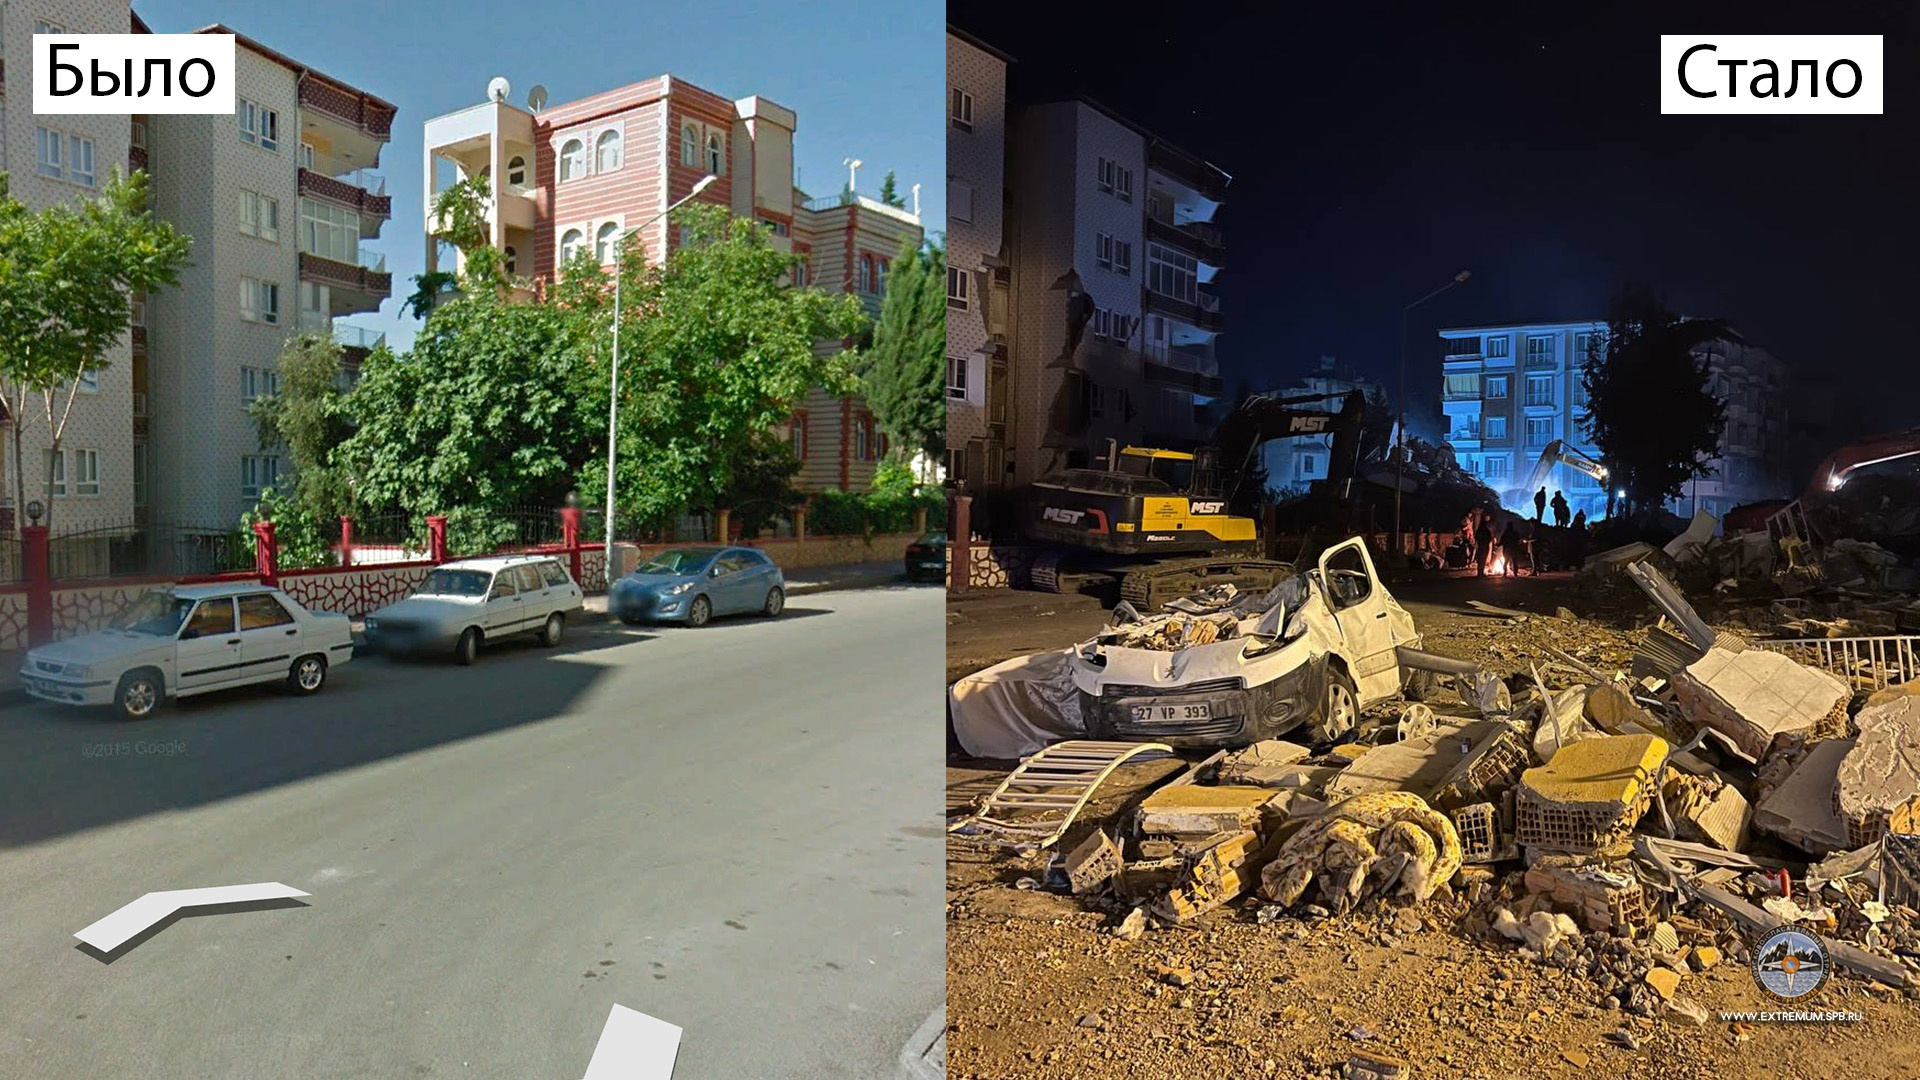 Глазами спасателей. Посмотрите, как изменился город в Турции после землетрясения